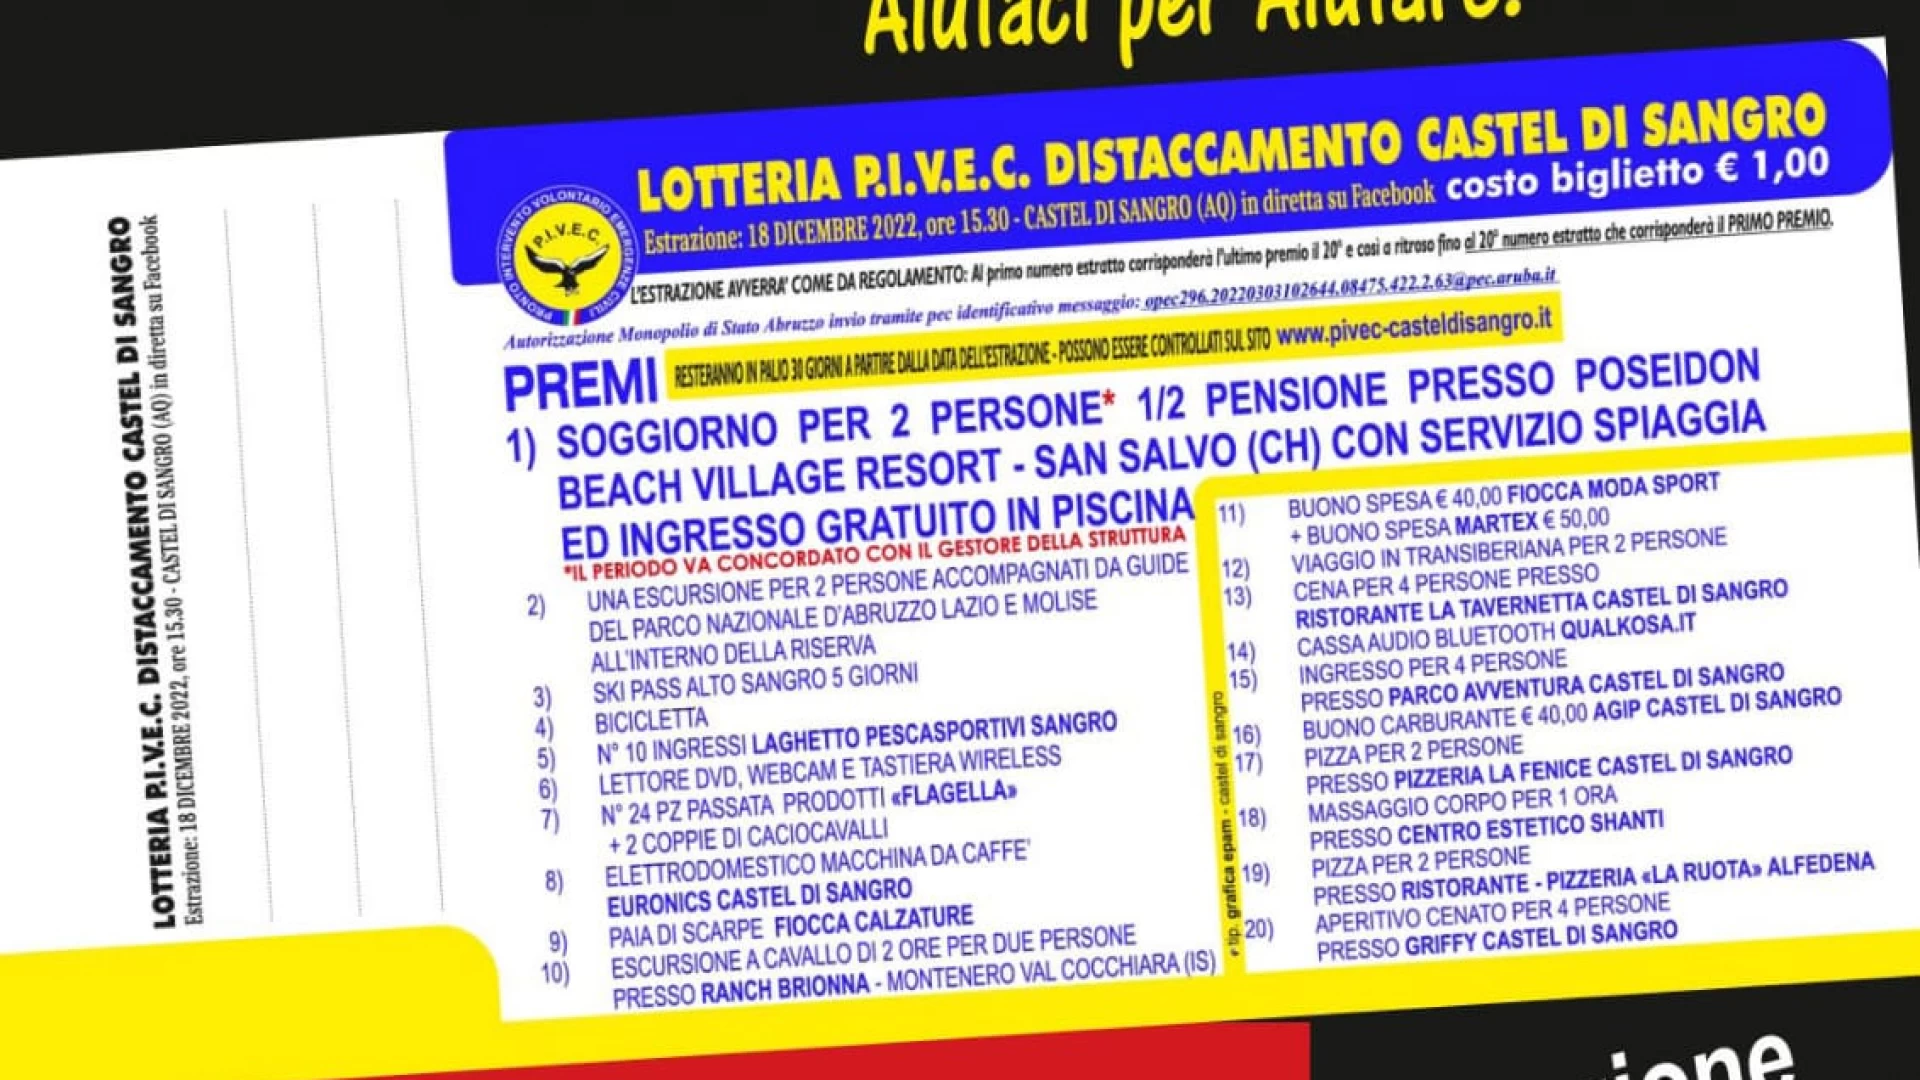 Castel Di Sangro: “Aiutaci per aiutare”. La lotteria promossa da P.I.V.E.C. per finanziare attività di volontariato sul territorio e acquisto di mezzi e apparecchiature utili alla collettività.